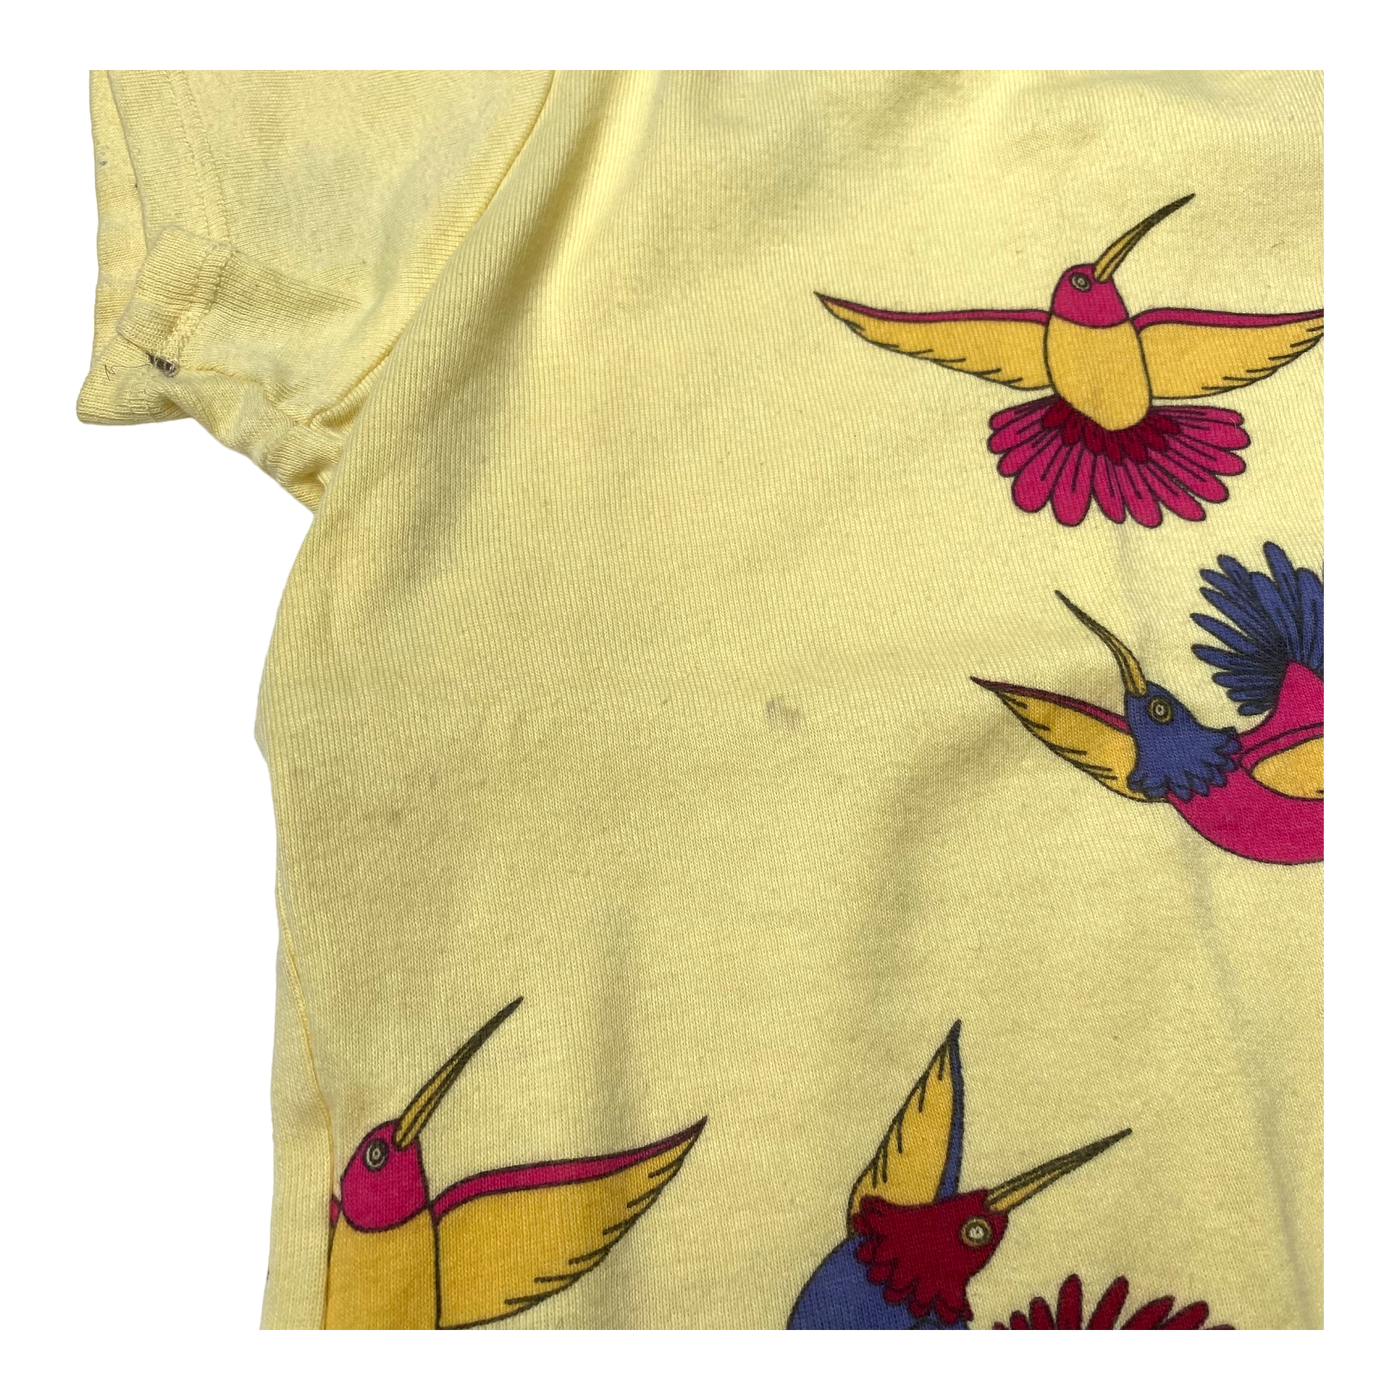 Mini Rodini t-shirt, birds | 92/98cm